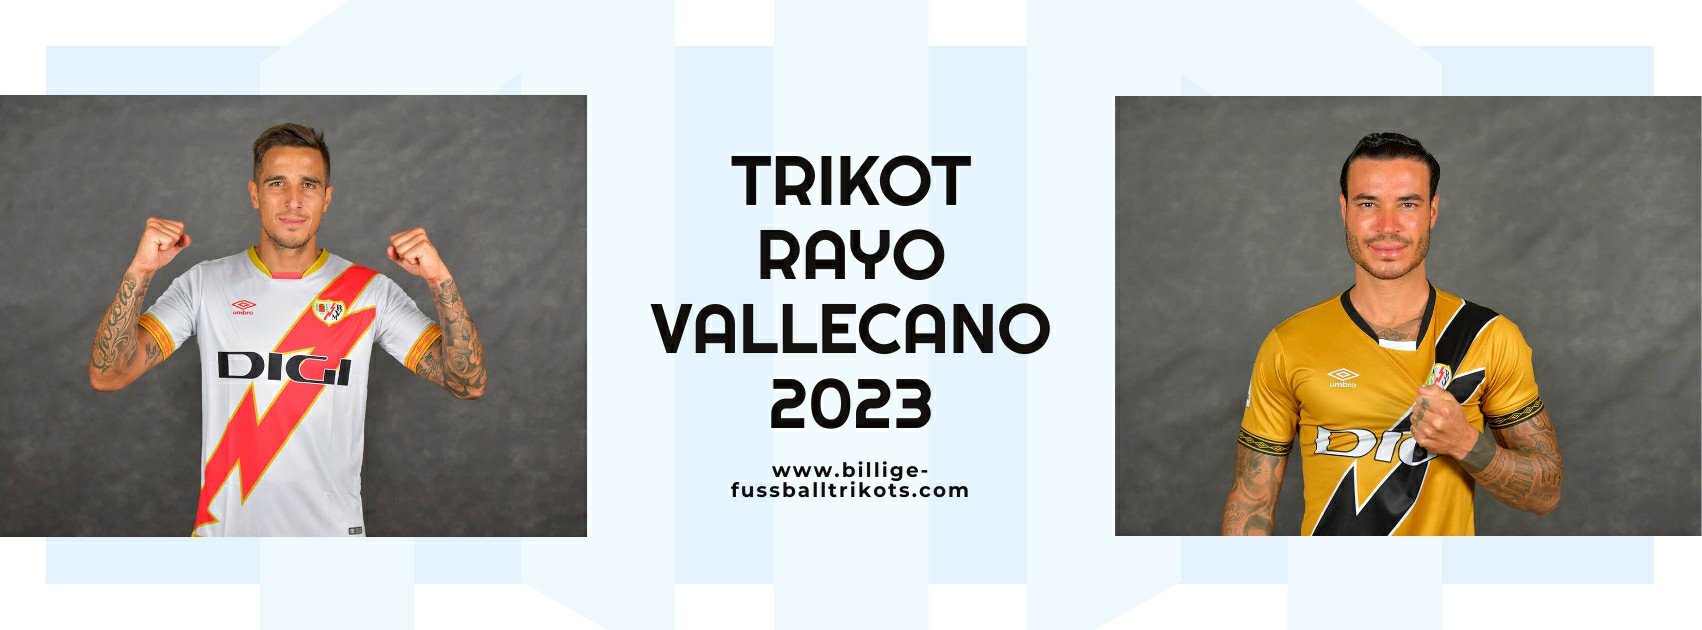 Rayo Vallecano Trikot 2023-2024